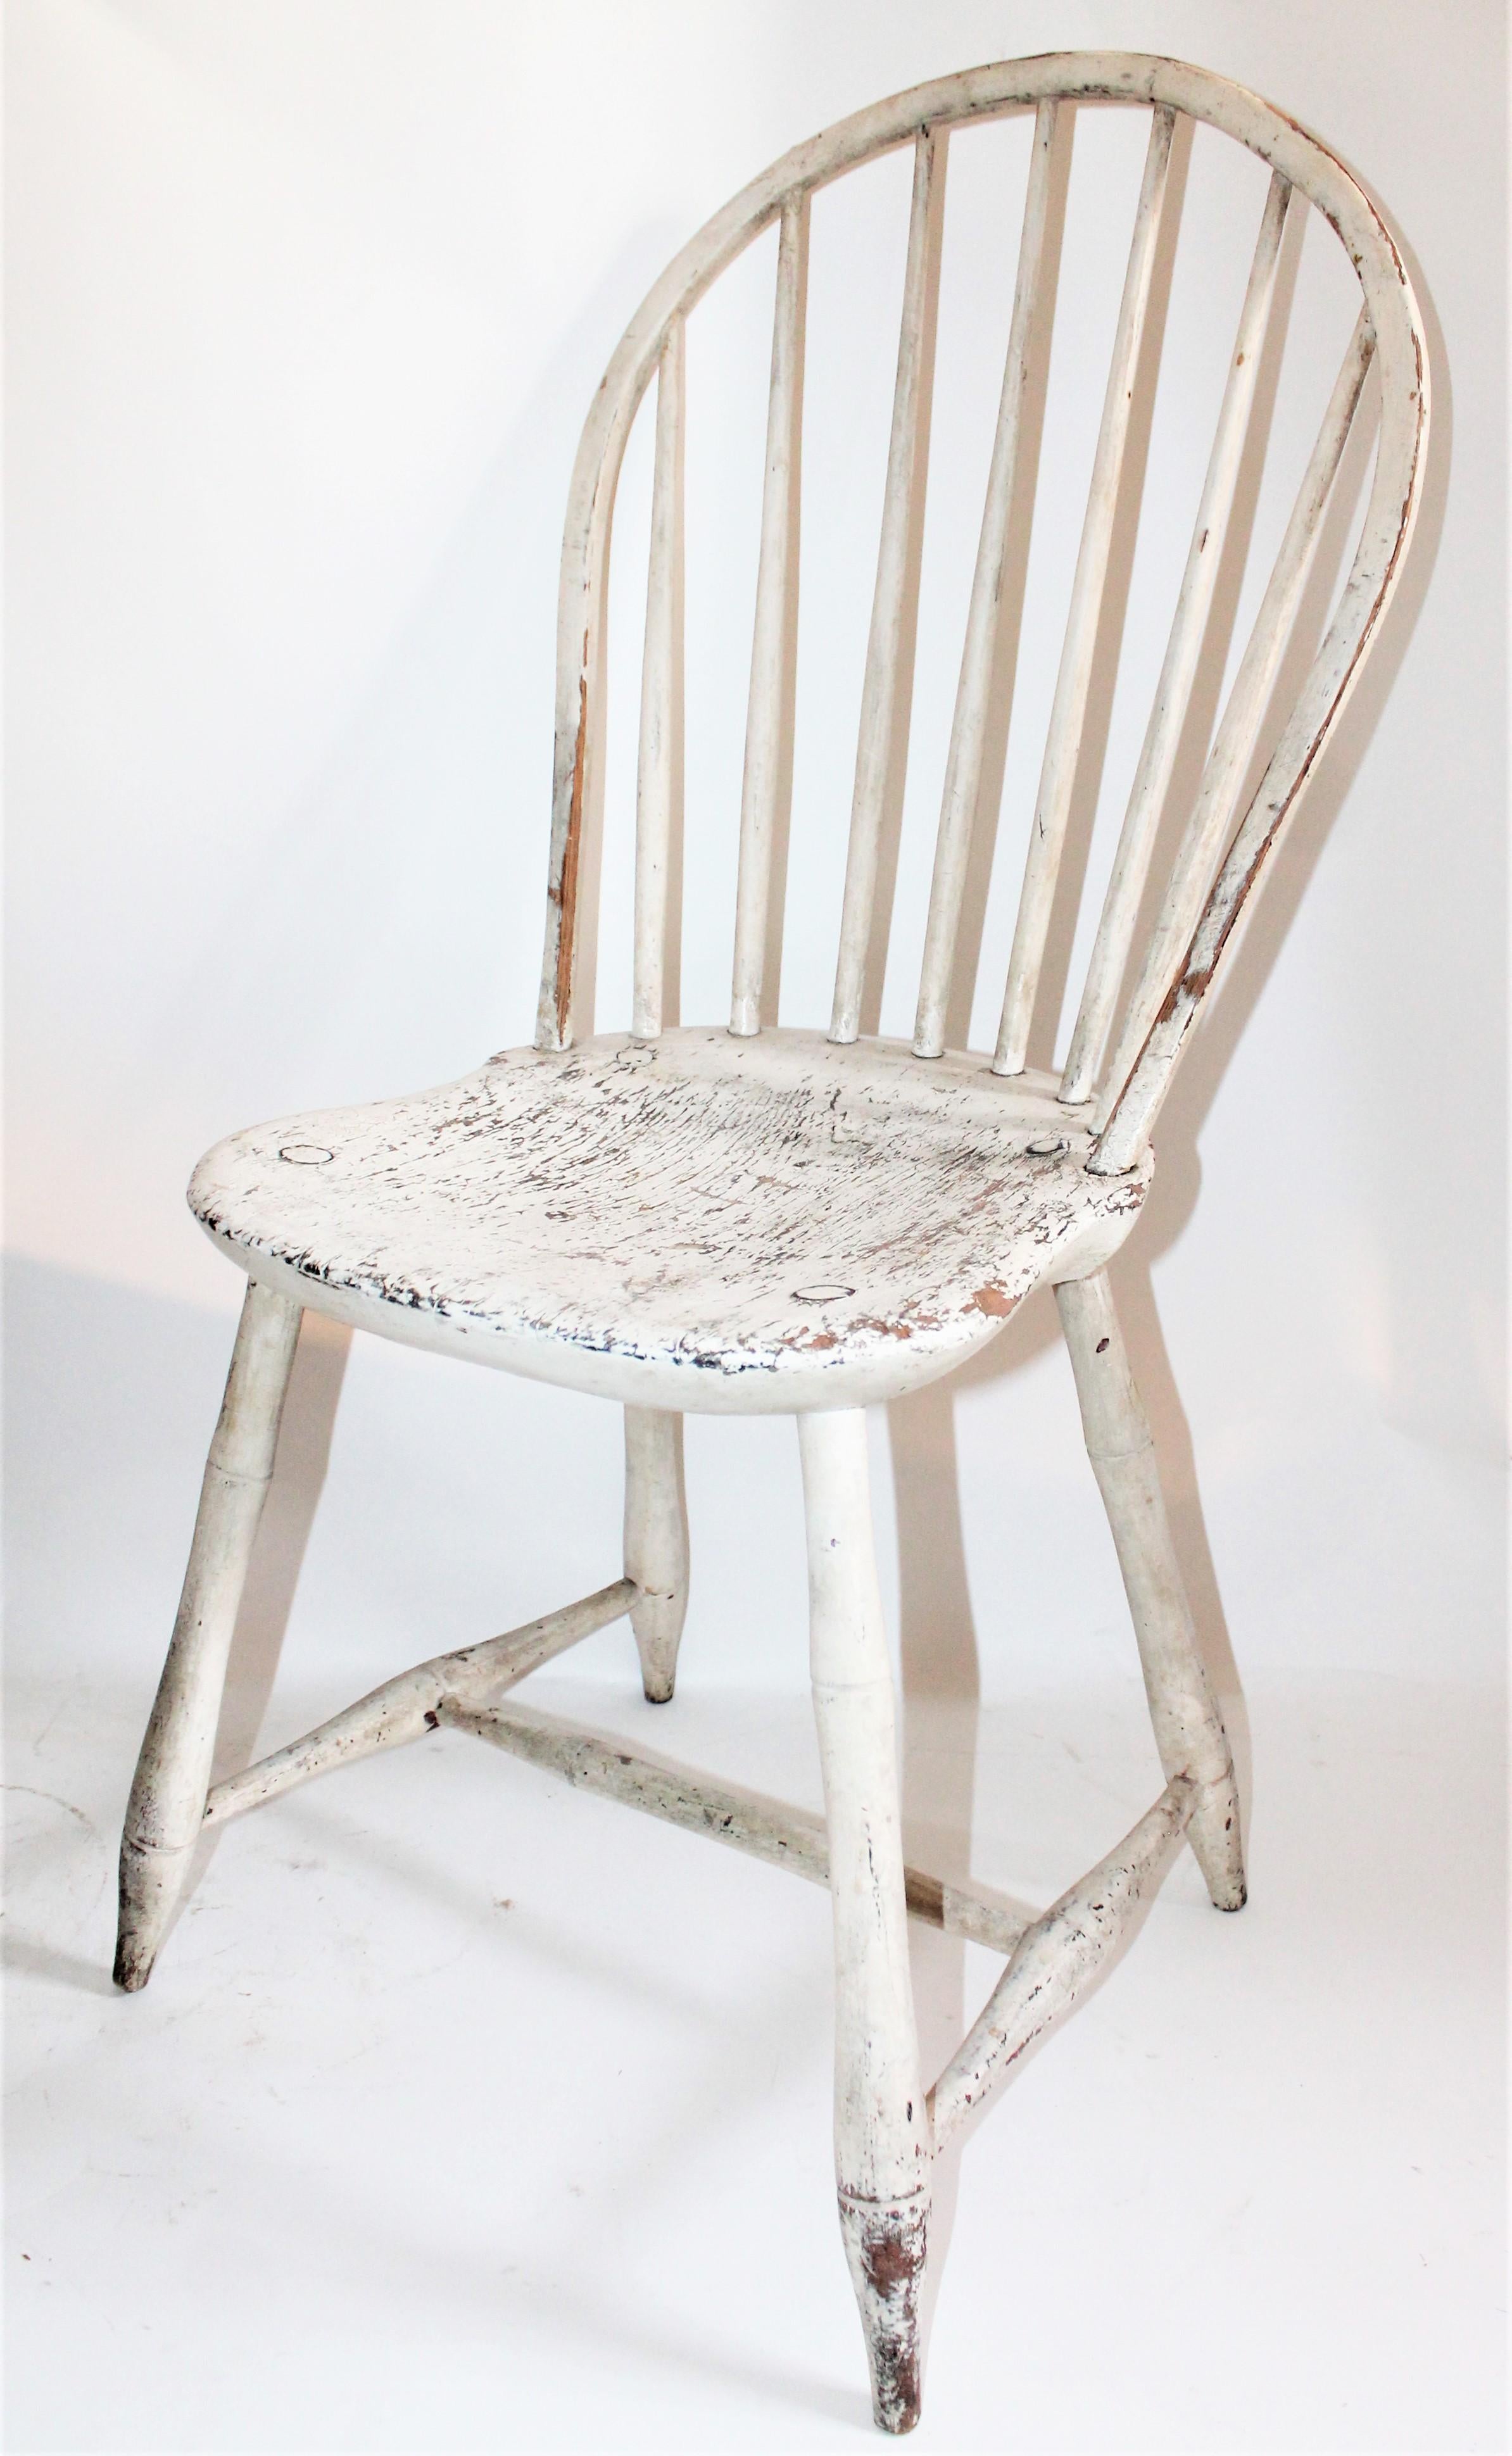 Dieser feine, original bemalte Windsor-Stuhl mit Ballonrücken ist in einer großartigen, unberührten Oberflächenfarbe. Dieser Stuhl wurde in Pennsylvania gefunden, stammt aber aus Neuengland oder wurde dort hergestellt.